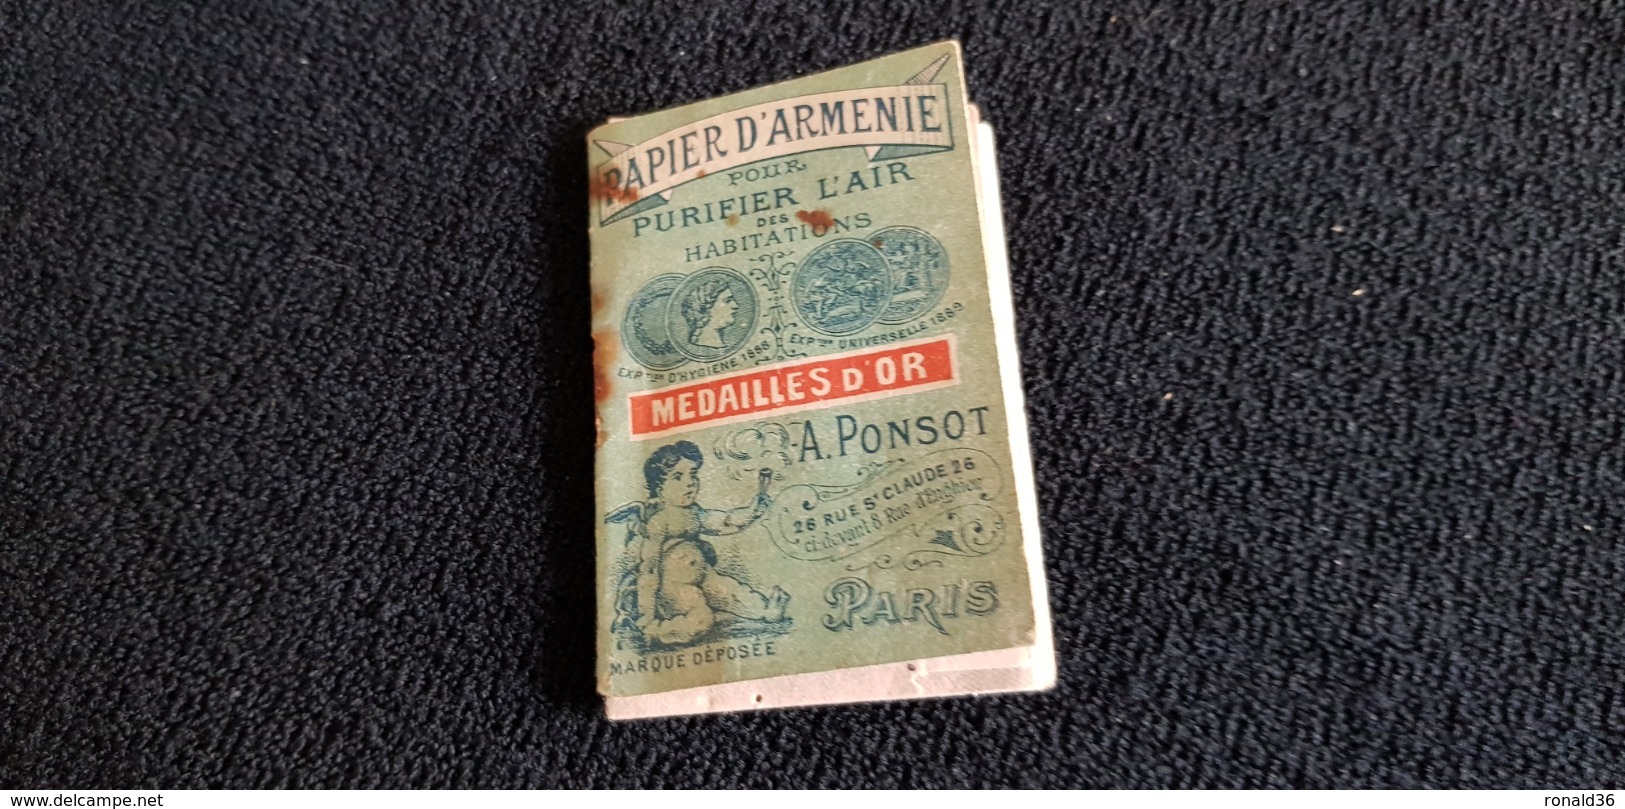 Carnet PAPIER D'ARMENIE Médaille D'or A PONSOT 26 Rue St Claude PARIS EXPOSITION 1888 1889 France Italie Grec Russie. - Publicités